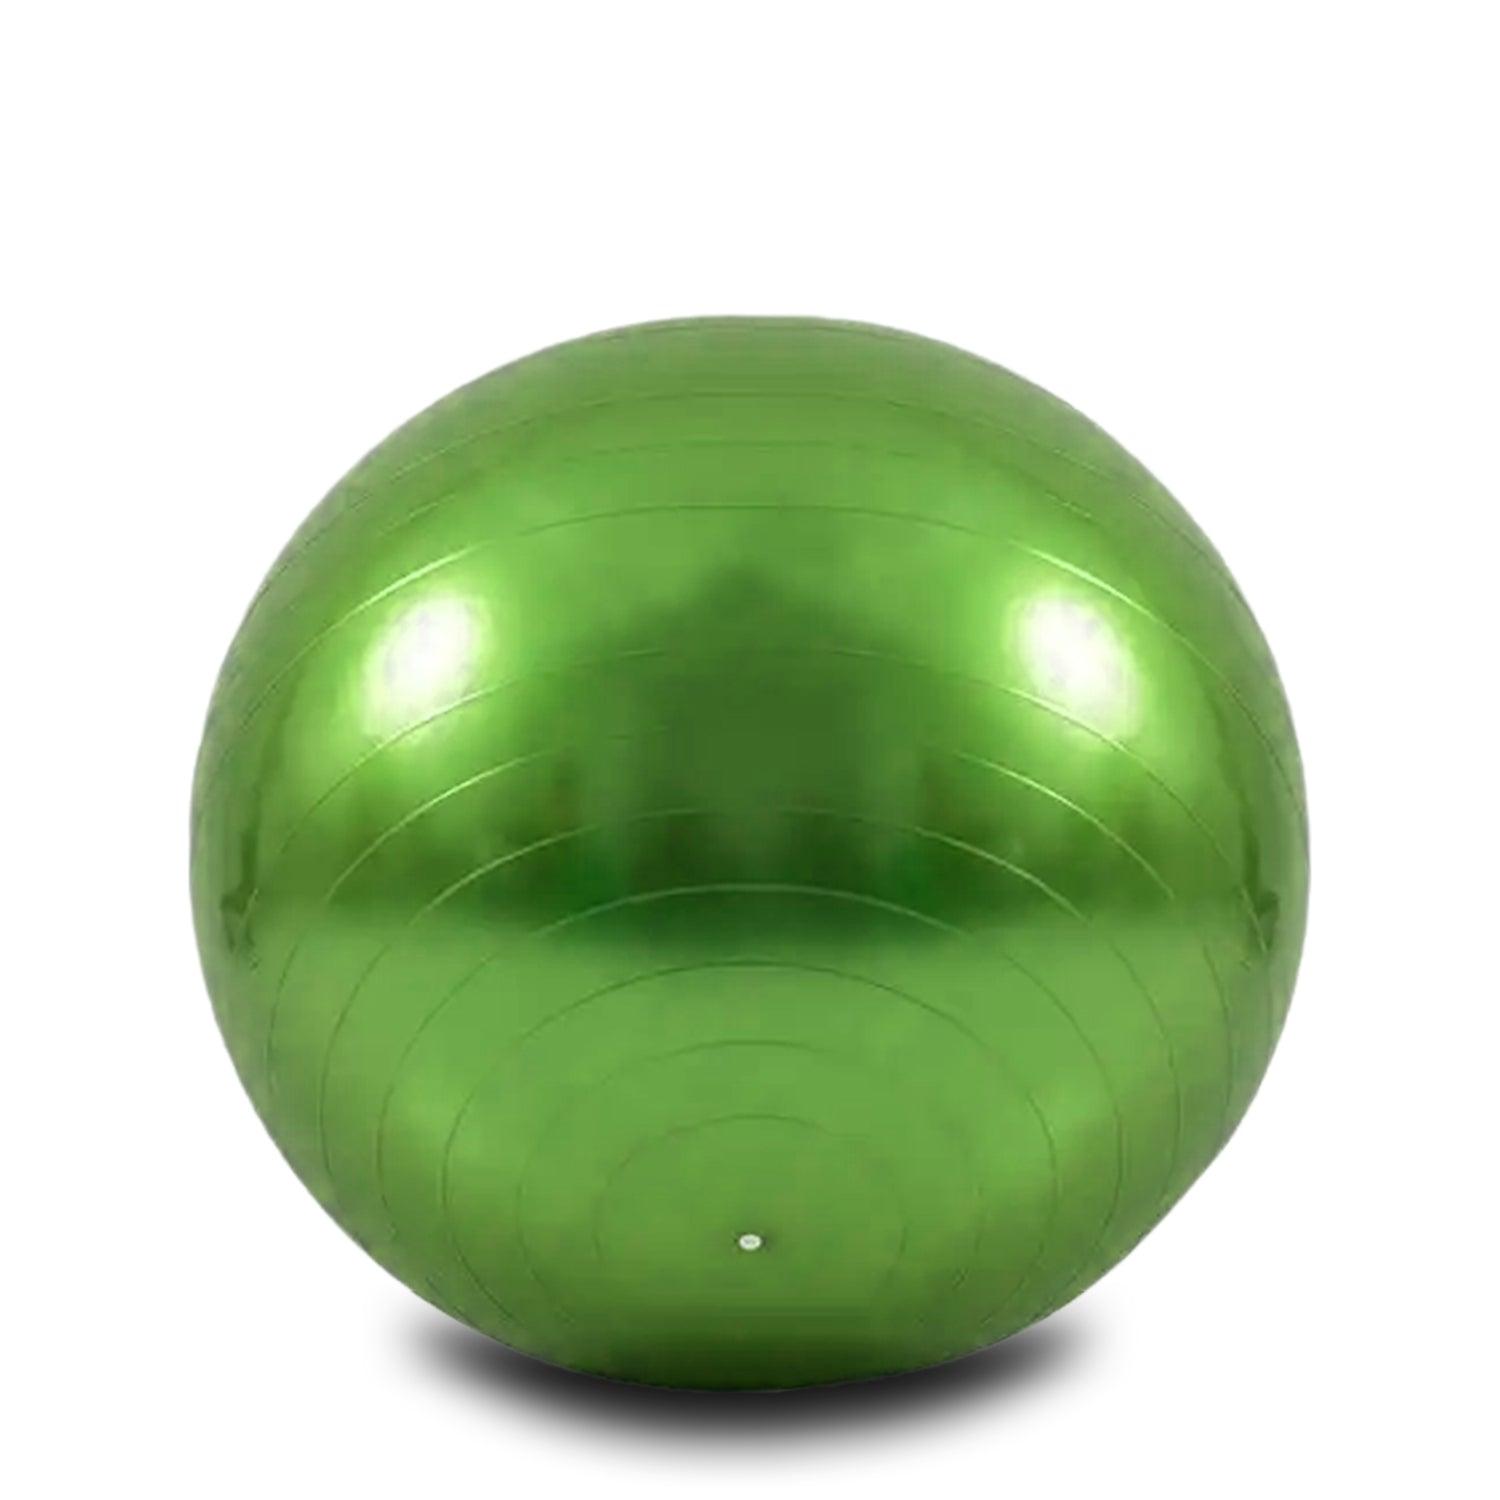 Yoga Balls Serene Series Green 75cm fitness exercise flexibility gym image 1